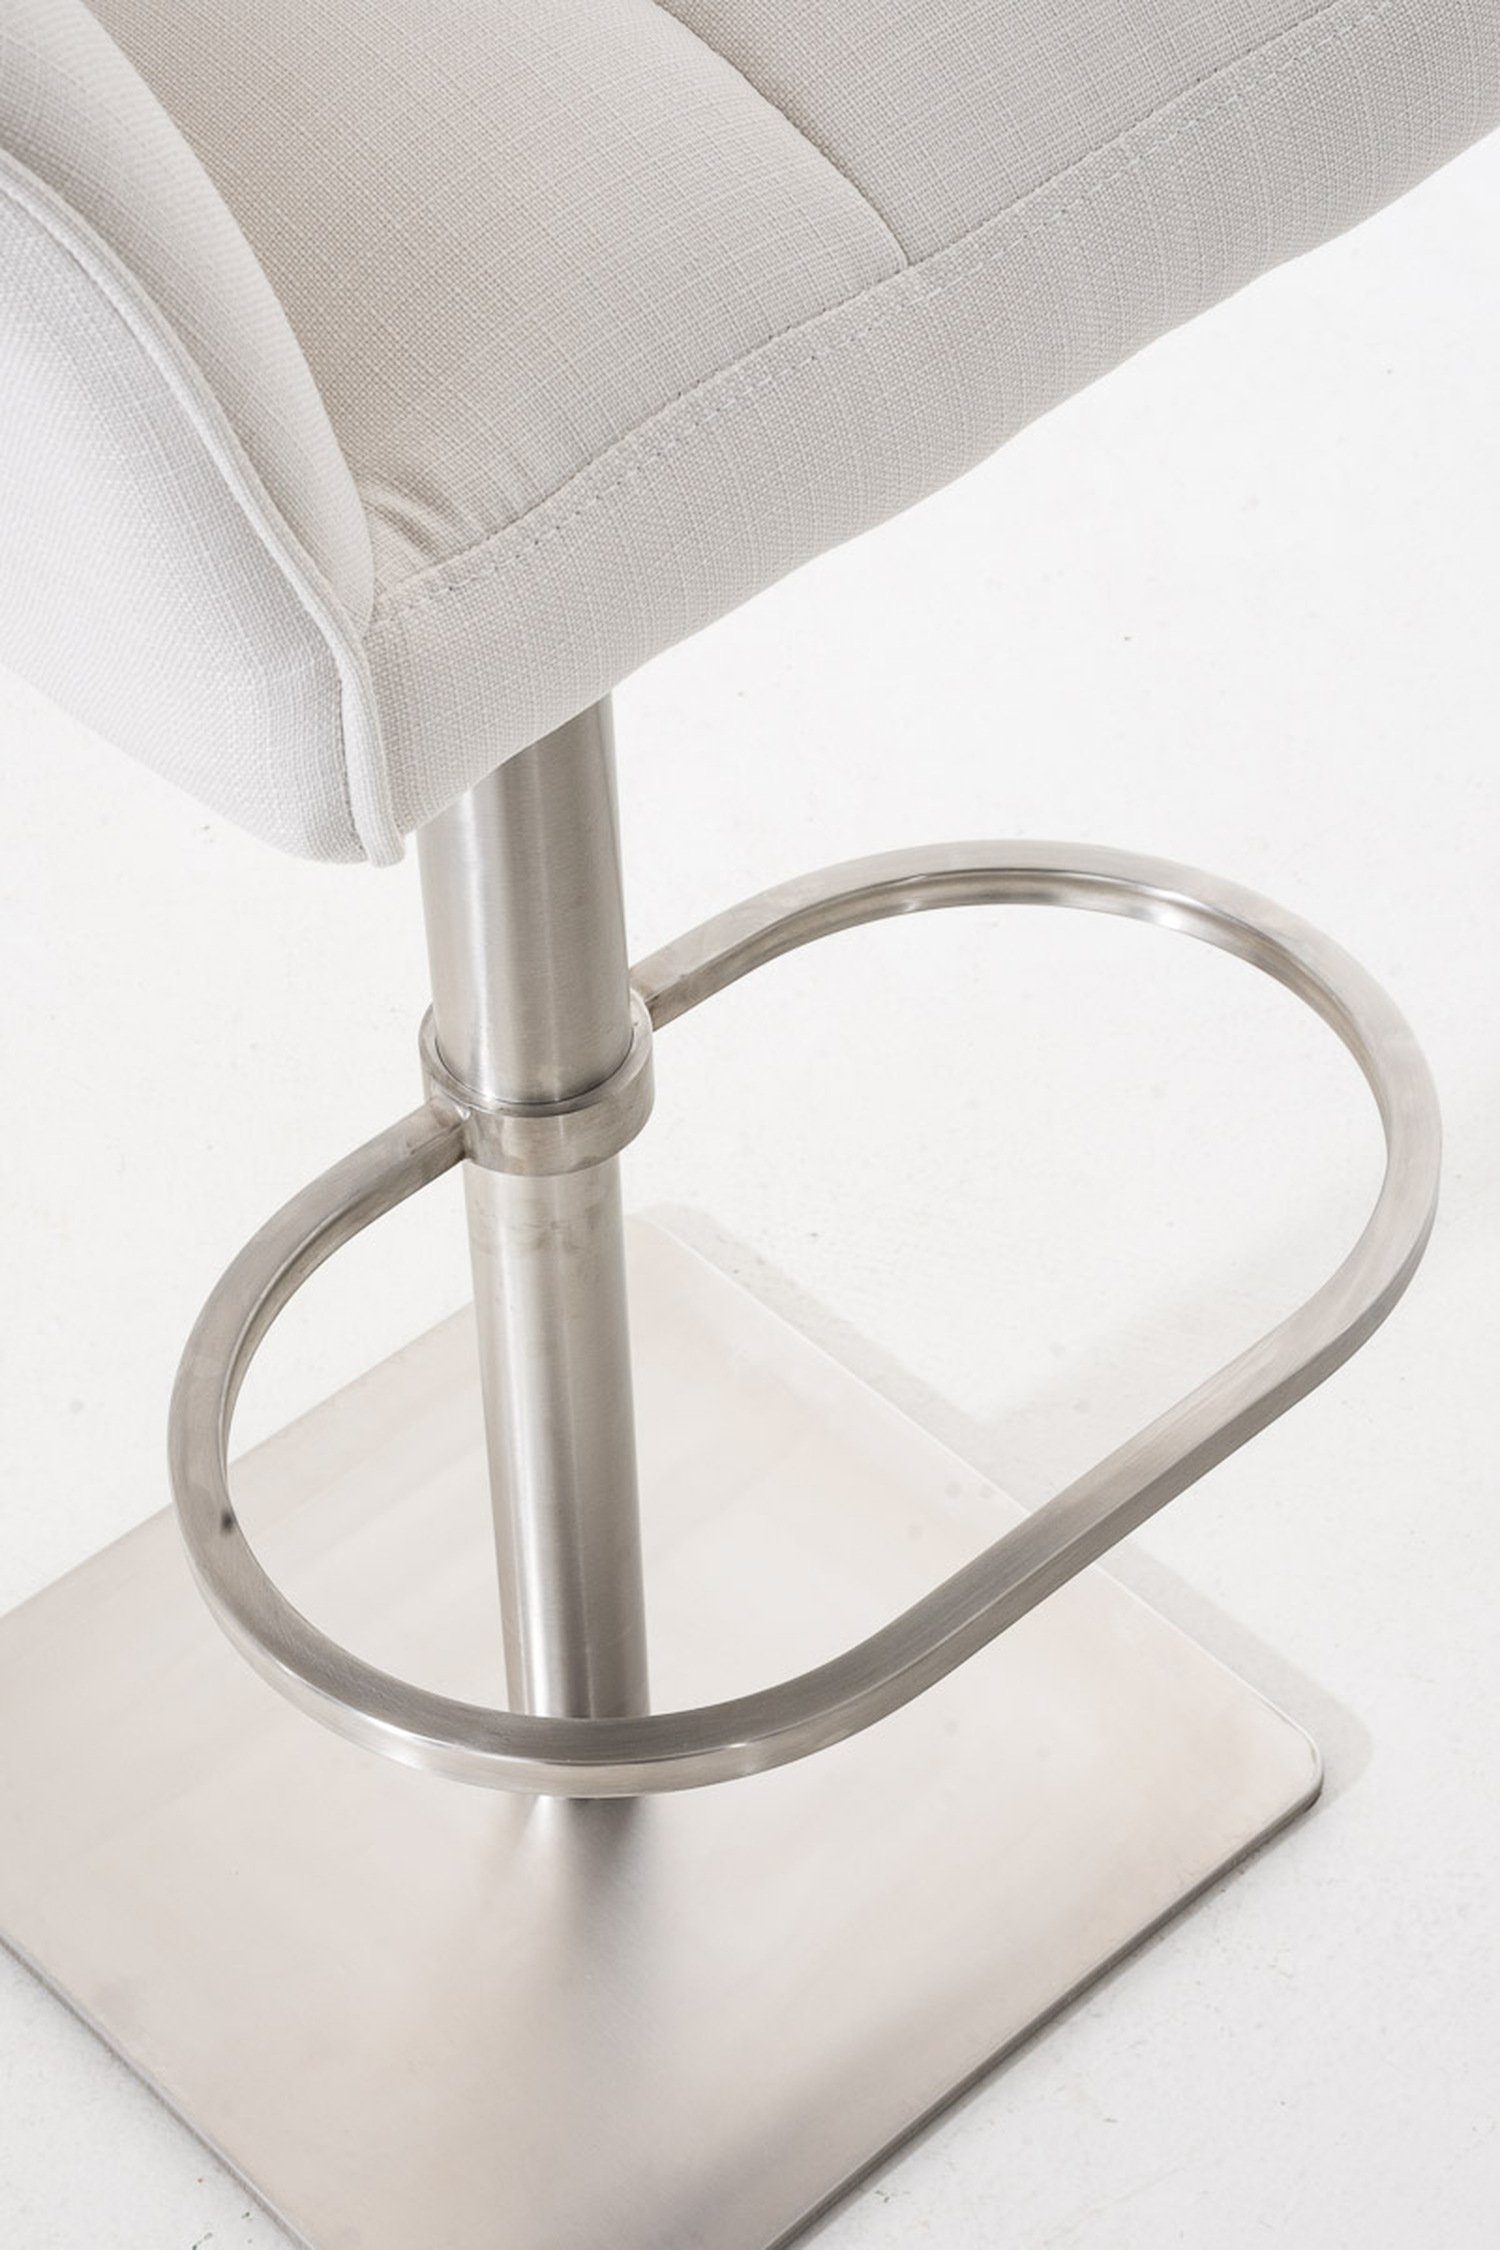 Damaso - und Hocker Sitzfläche: Küche), 360° für Fußstütze - (mit drehbar Edelstahl Rückenlehne TPFLiving Weiß Barhocker Gestell & Stoff Theke -